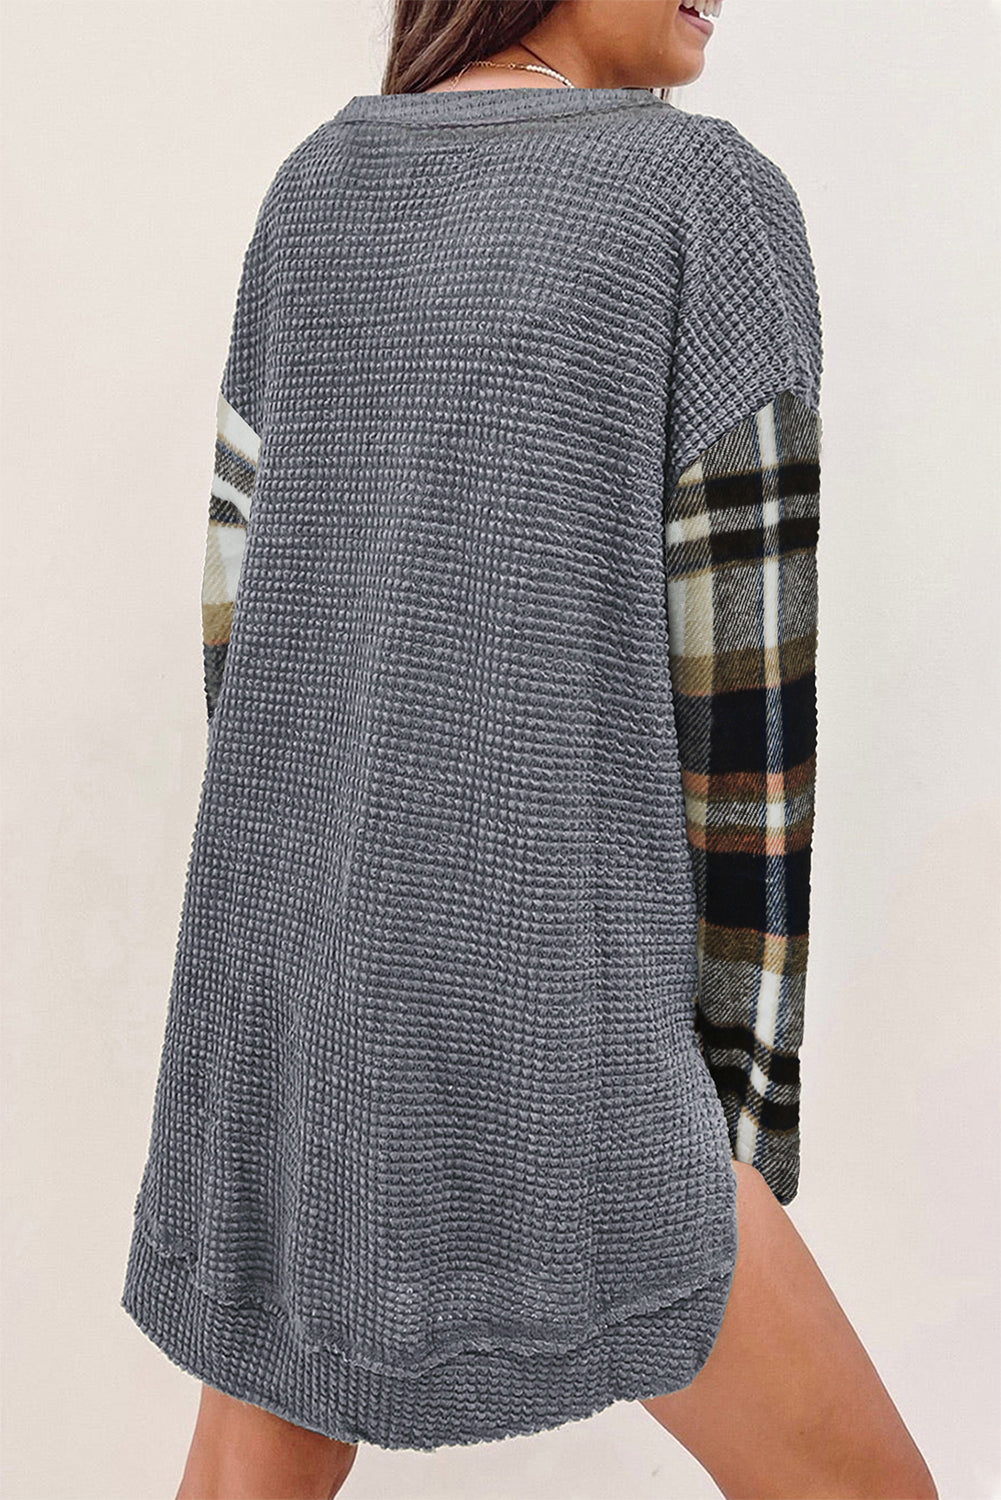 Haut Henley en tricot texturé à carreaux amples gris foncé